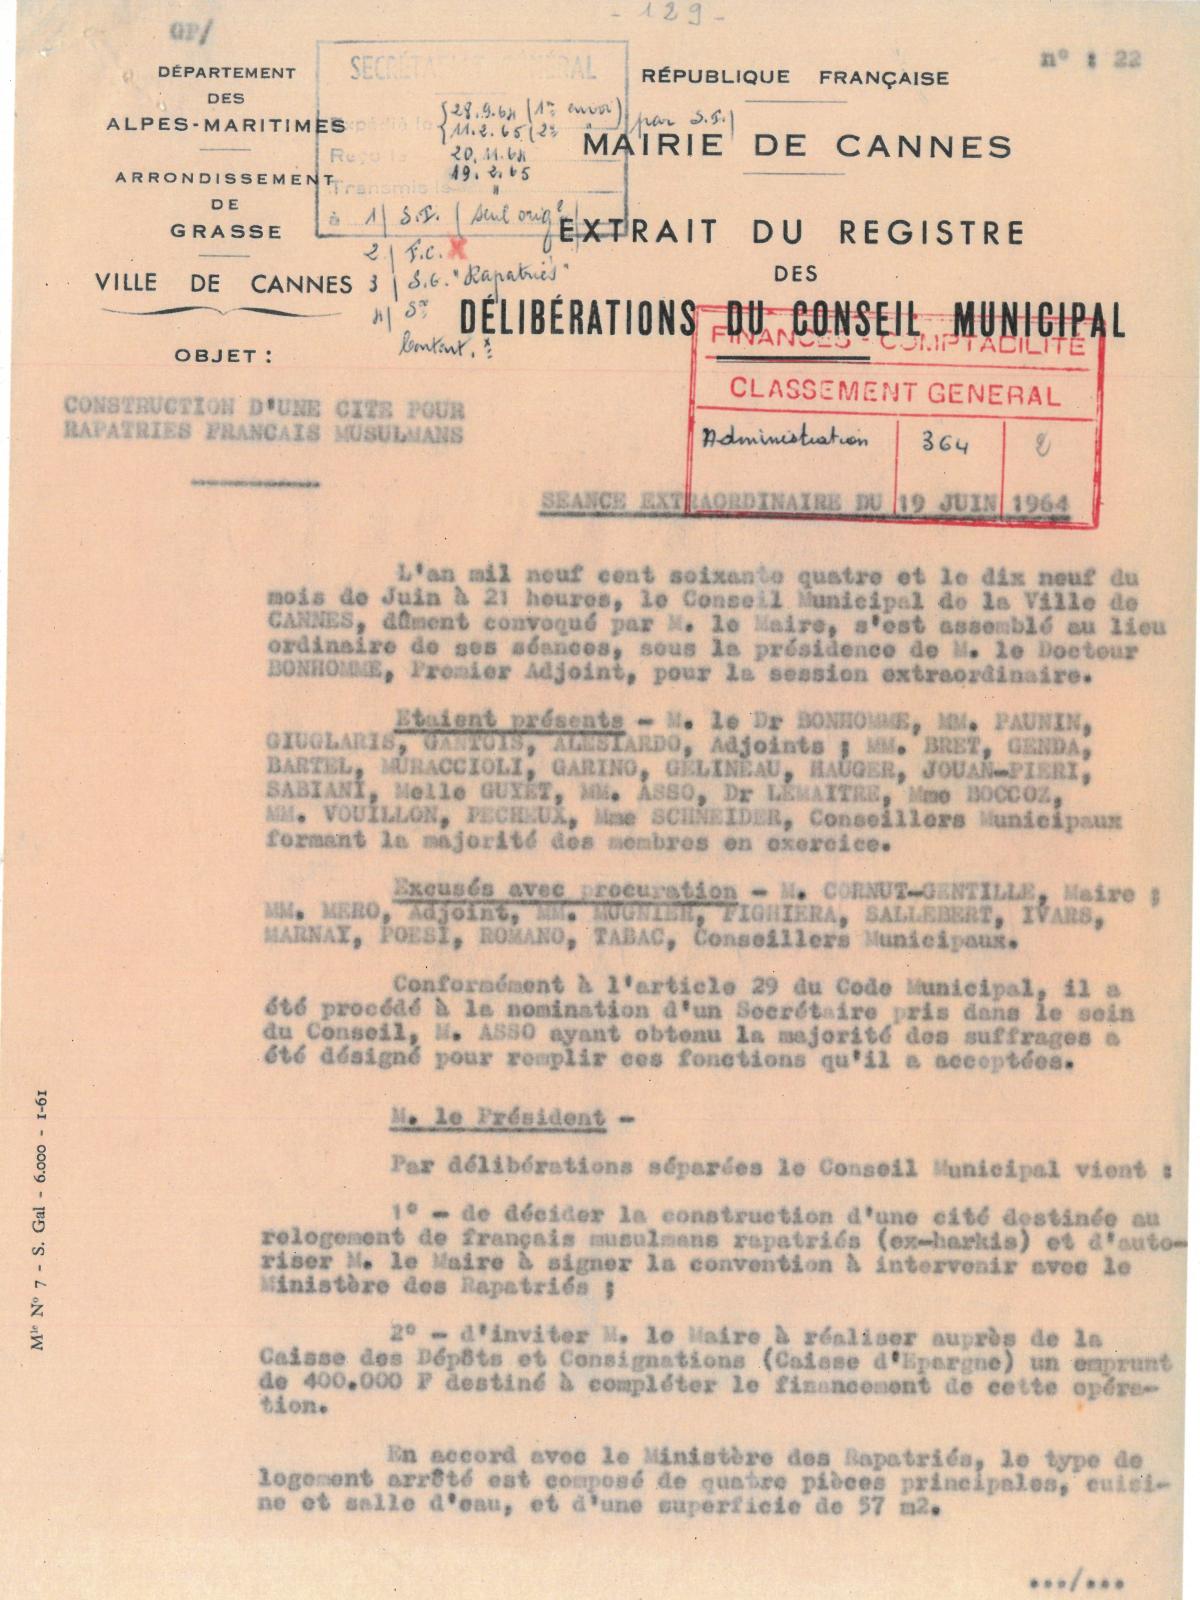 Illustration 13, p. 1 : accueil des Harkis à Cannes, délibérations du conseil municipal, séance du 19 juin 1964 (Archives de Cannes, 22W238)